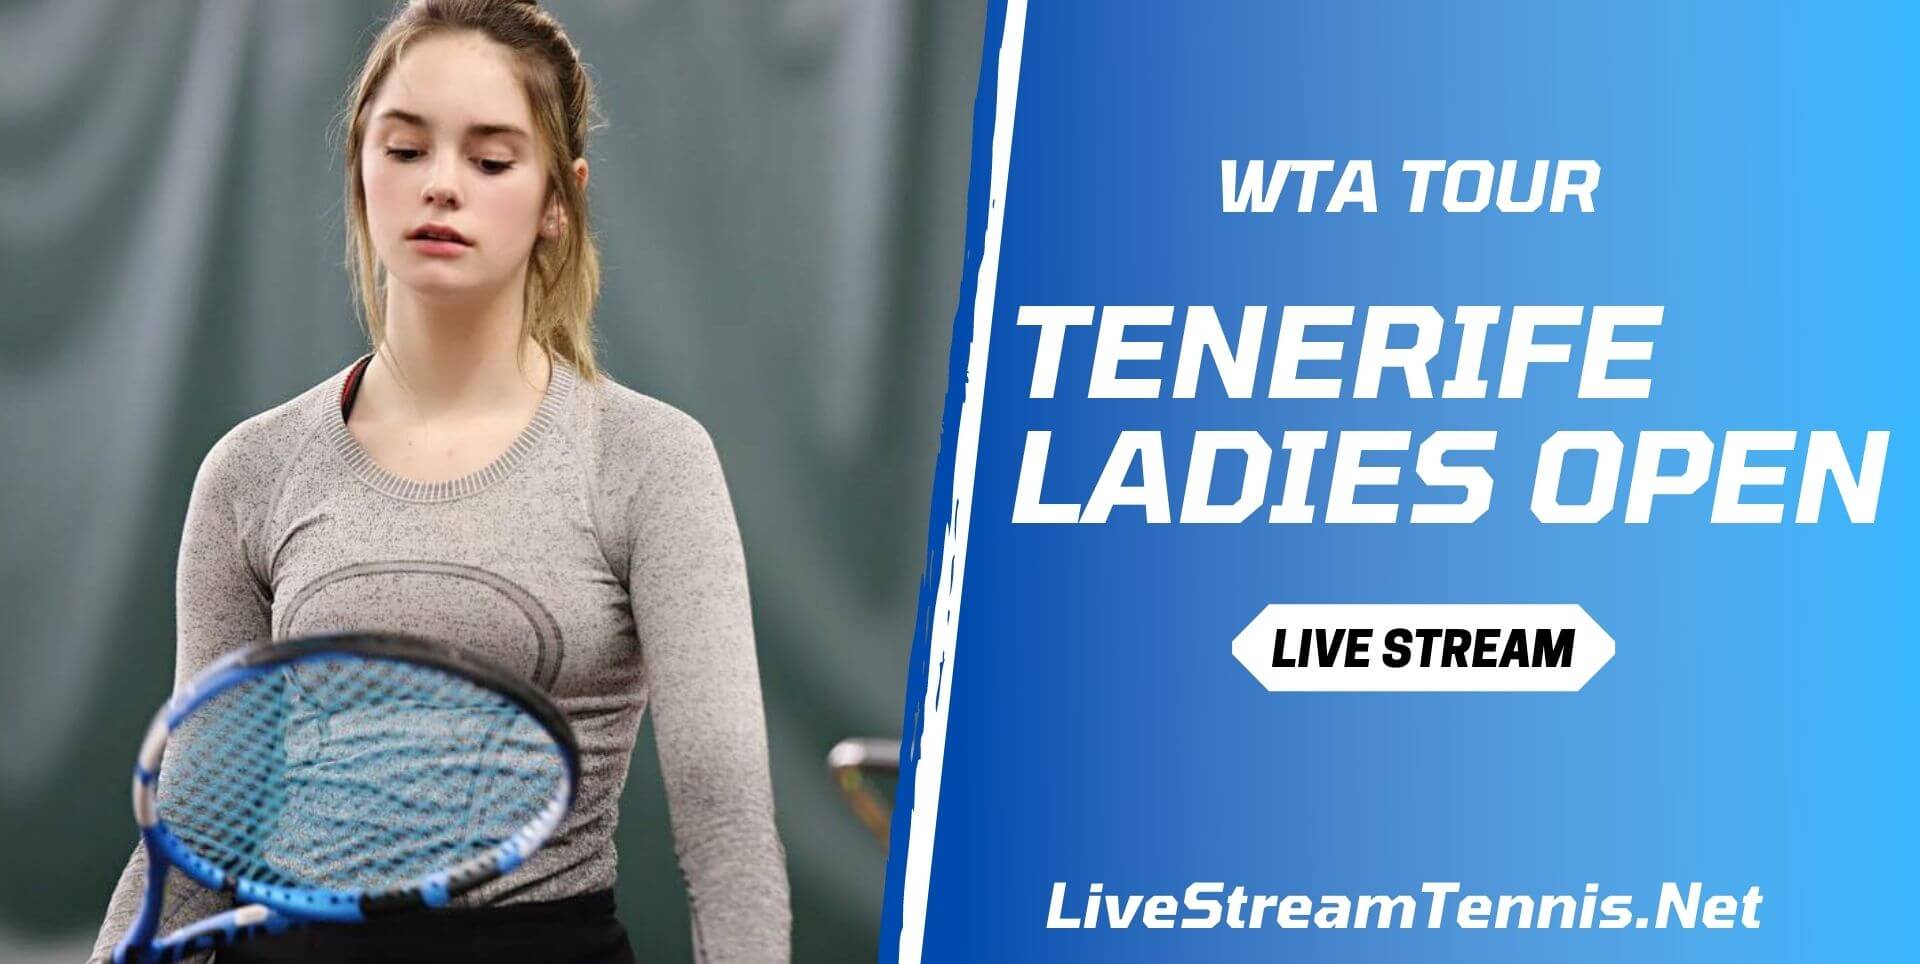 Tenerife Ladies Open Live Stream